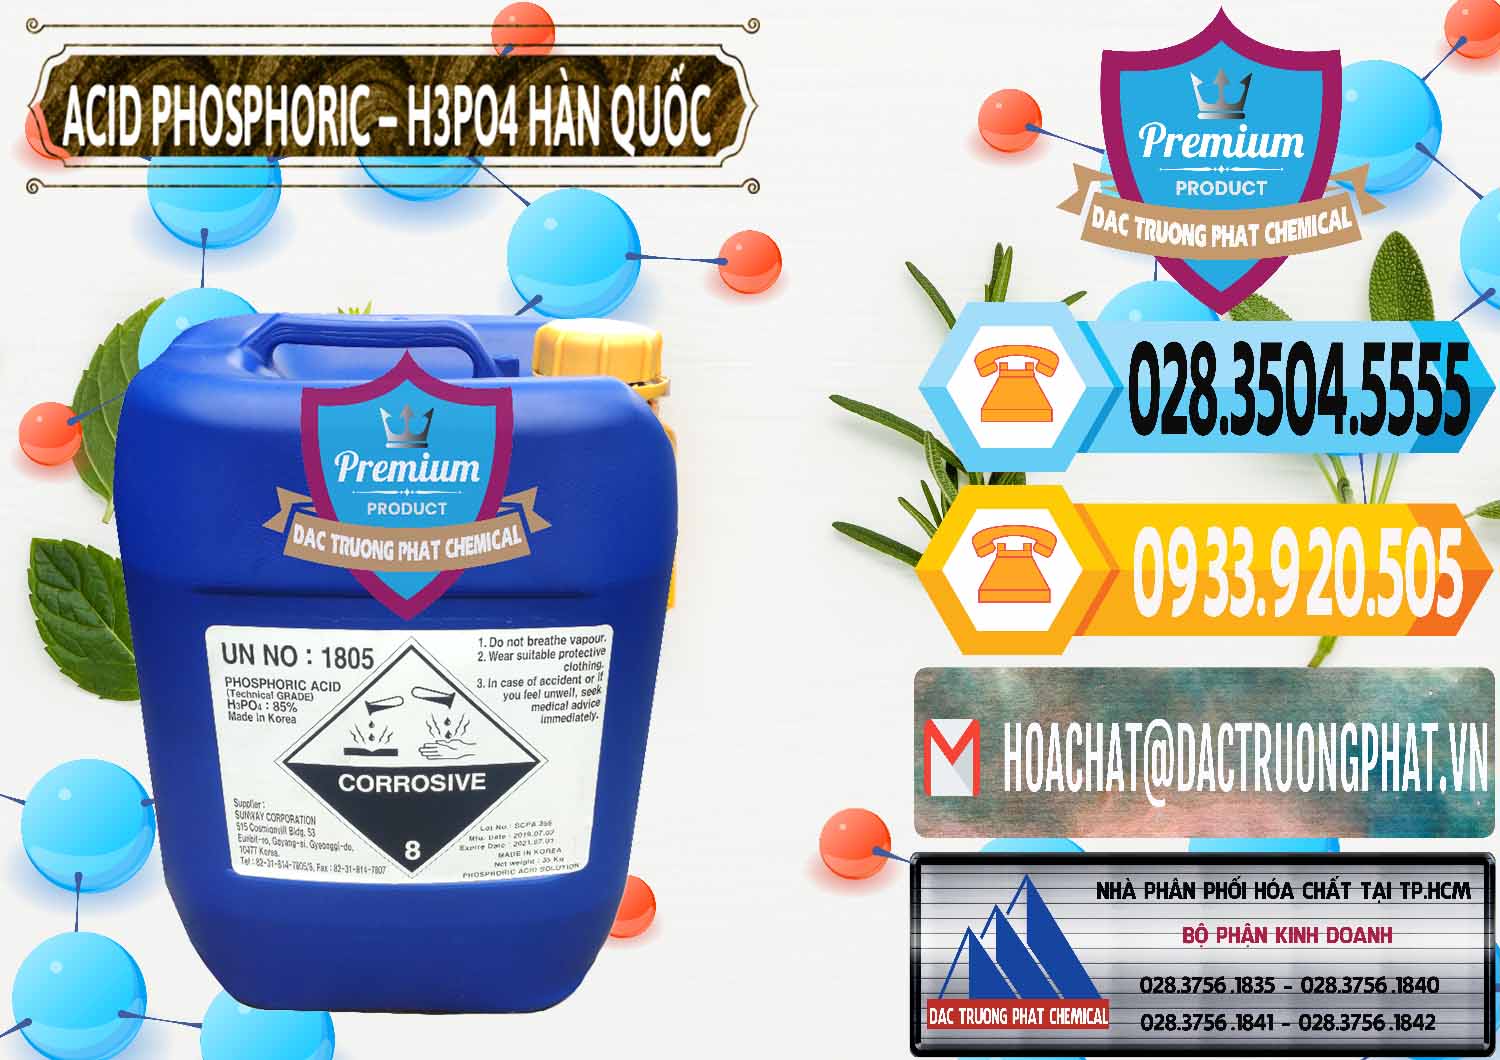 Cty chuyên nhập khẩu & bán Acid Phosphoric – H3PO4 85% Can Xanh Hàn Quốc Korea - 0016 - Chuyên bán và cung cấp hóa chất tại TP.HCM - hoachattayrua.net